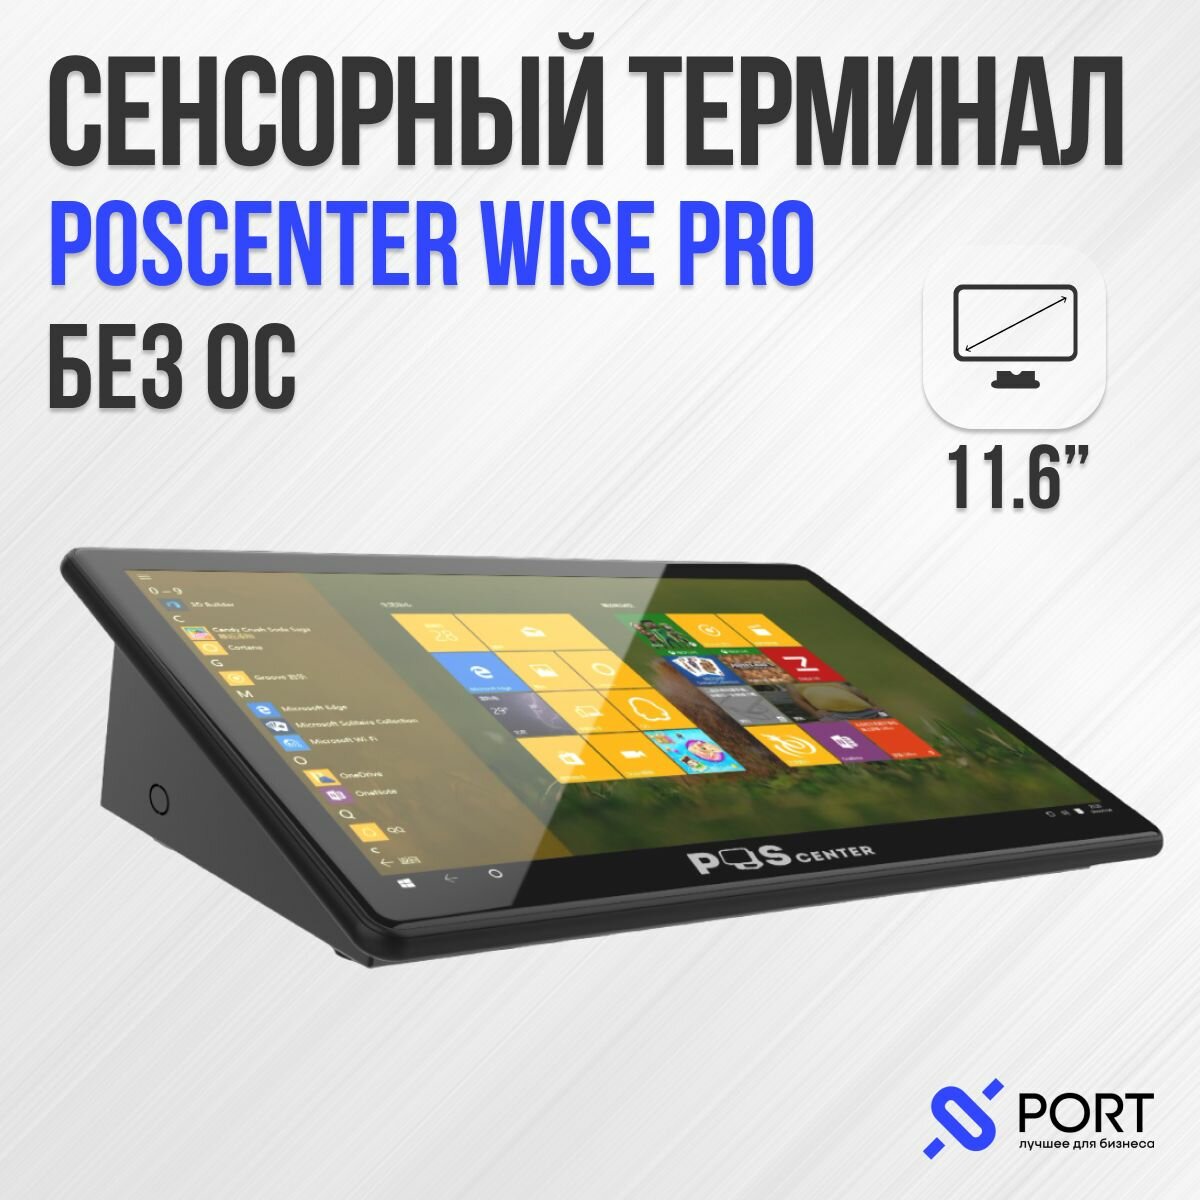 Сенсорный pos терминал poscenter Wise pro,11,6", RAM 4Gb, eMMC 64Gb, WiFi, BT, без ОС